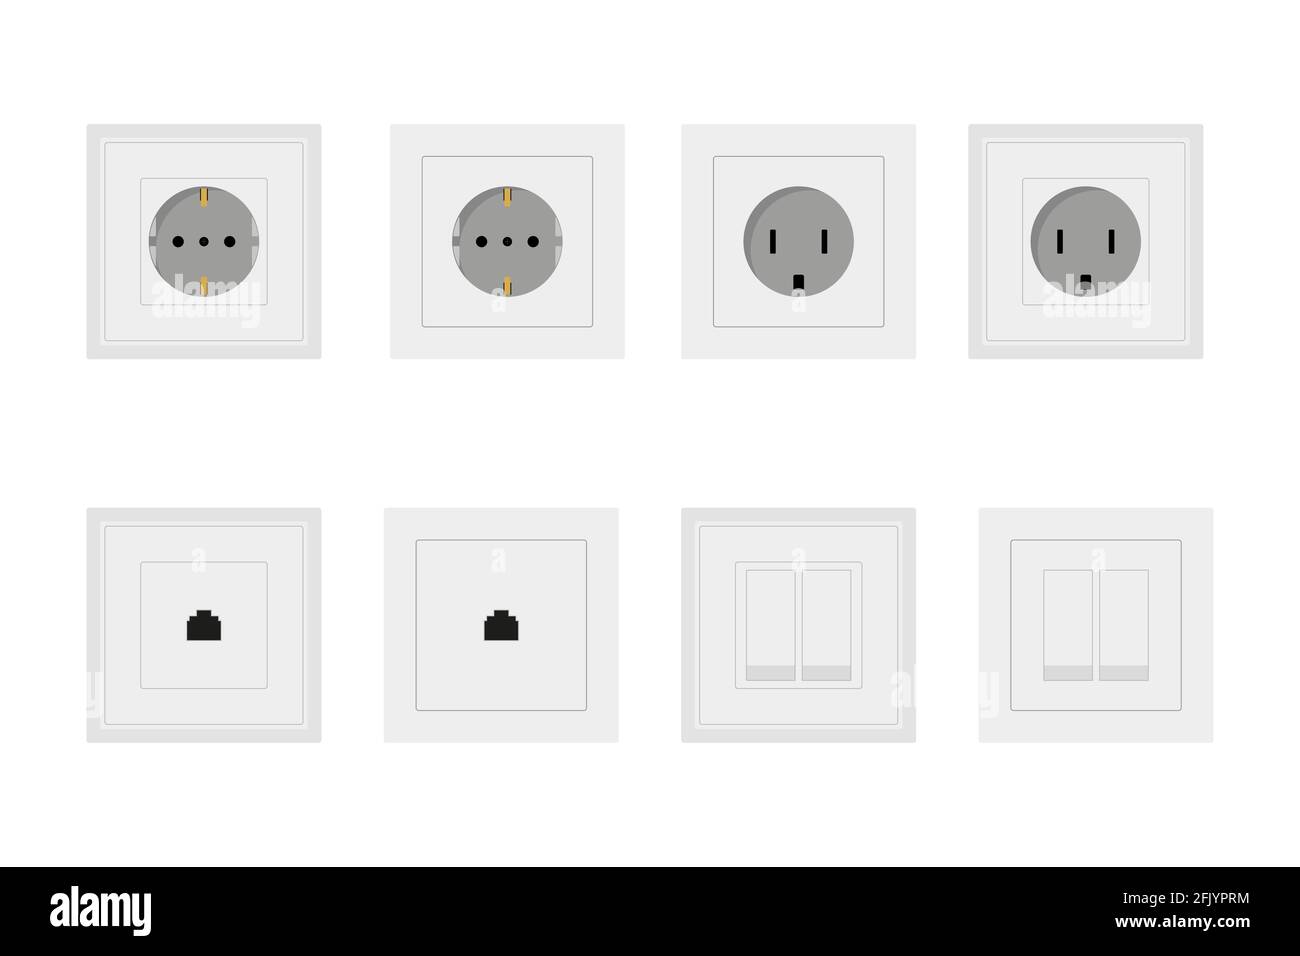 Presa e presa elettrica per prese elettriche ed elettricità illustrazione  set di diversi tipi di prese e interruttori isolati su wi Immagine e  Vettoriale - Alamy